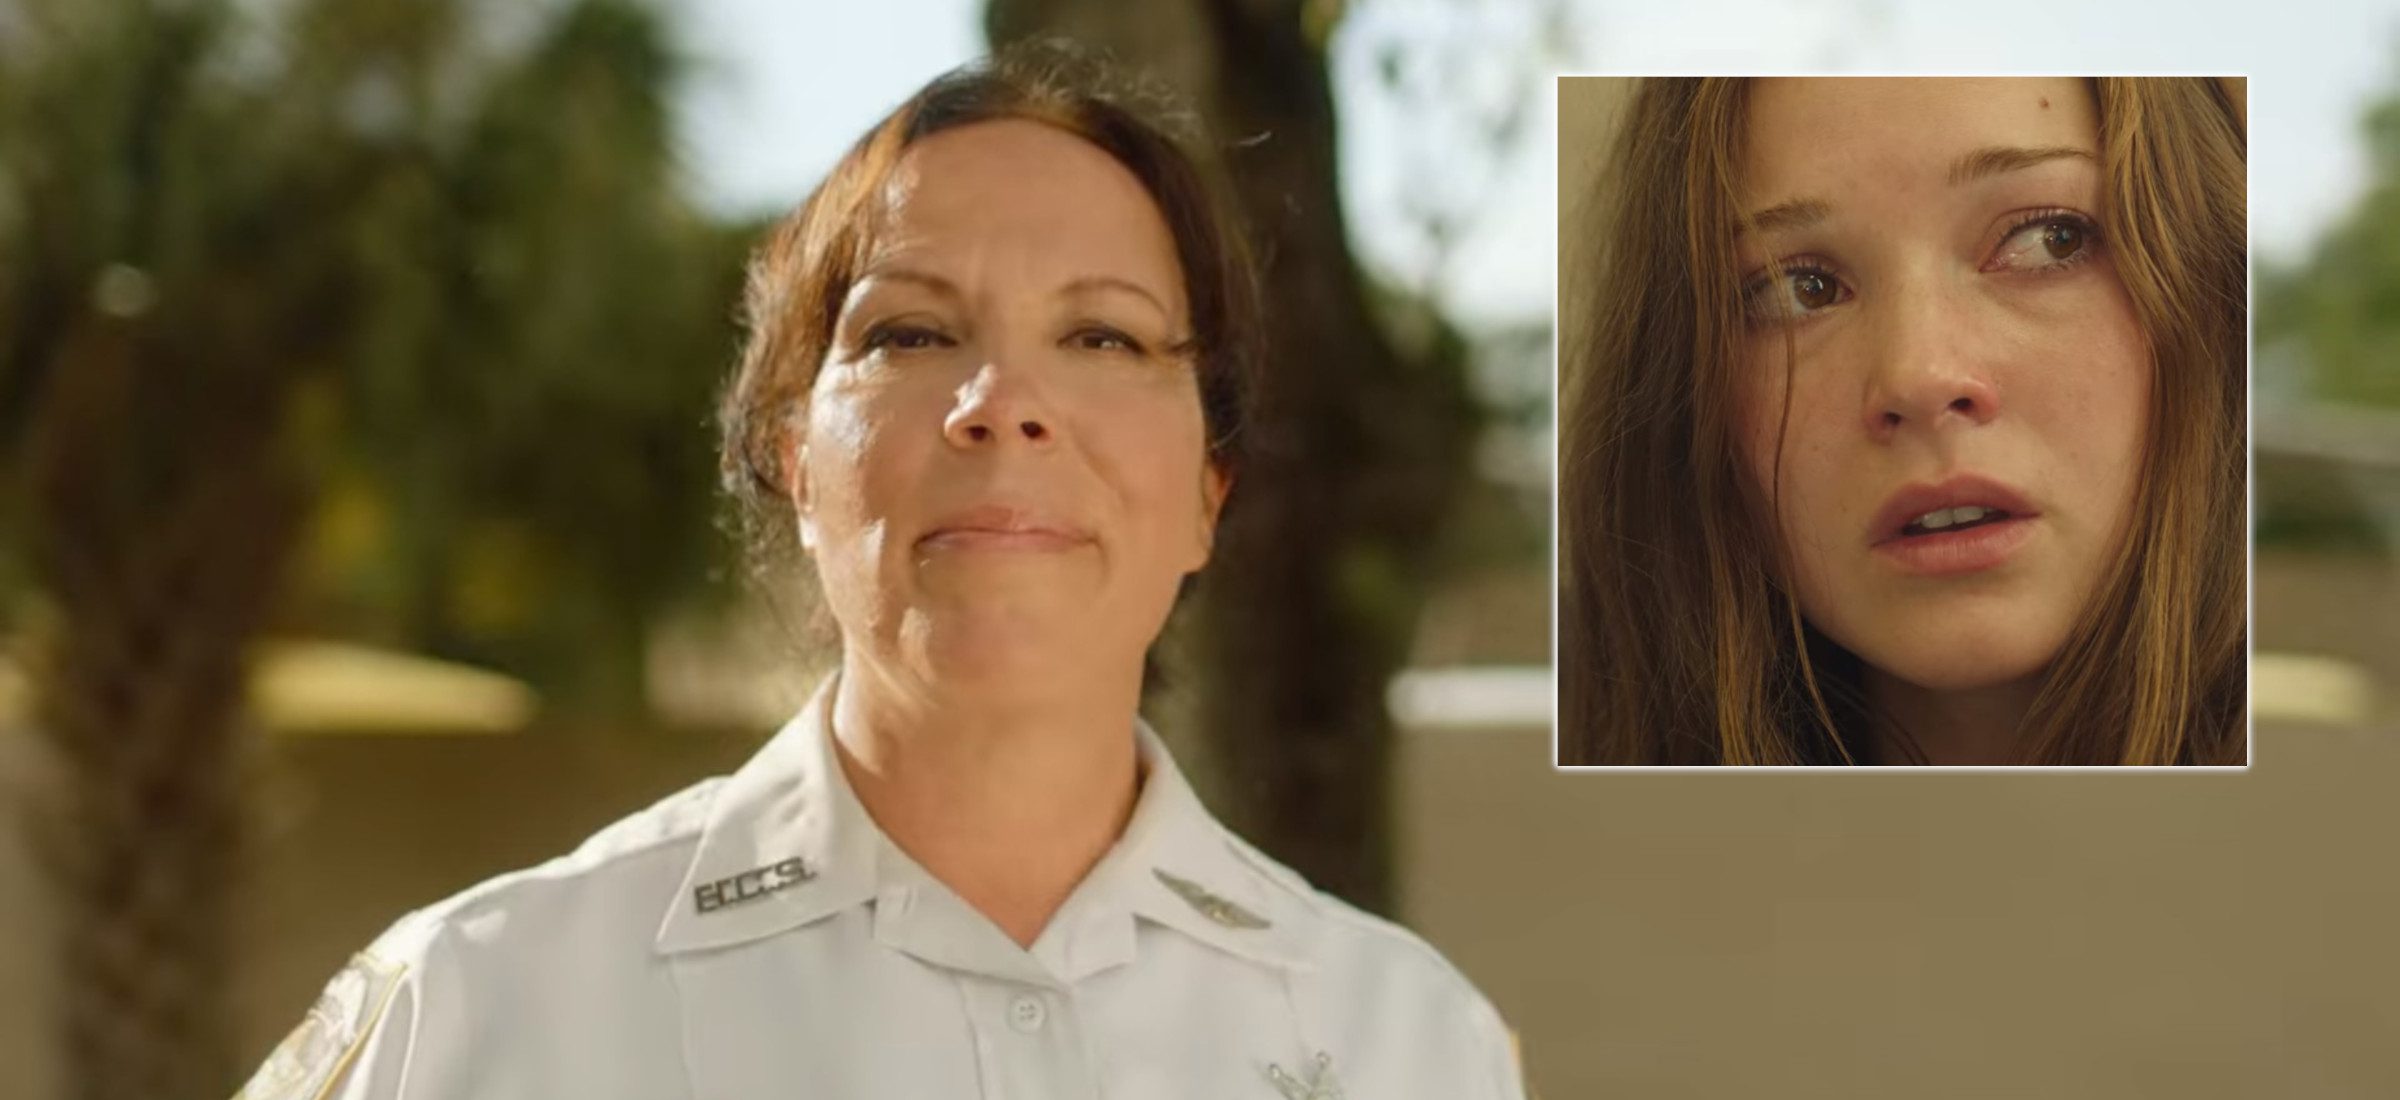 Sie entkam einem Serienmörder und wurde Polizistin. Die Geschichte von Lisa McVey endet nicht mit dem Netflix-Film 352